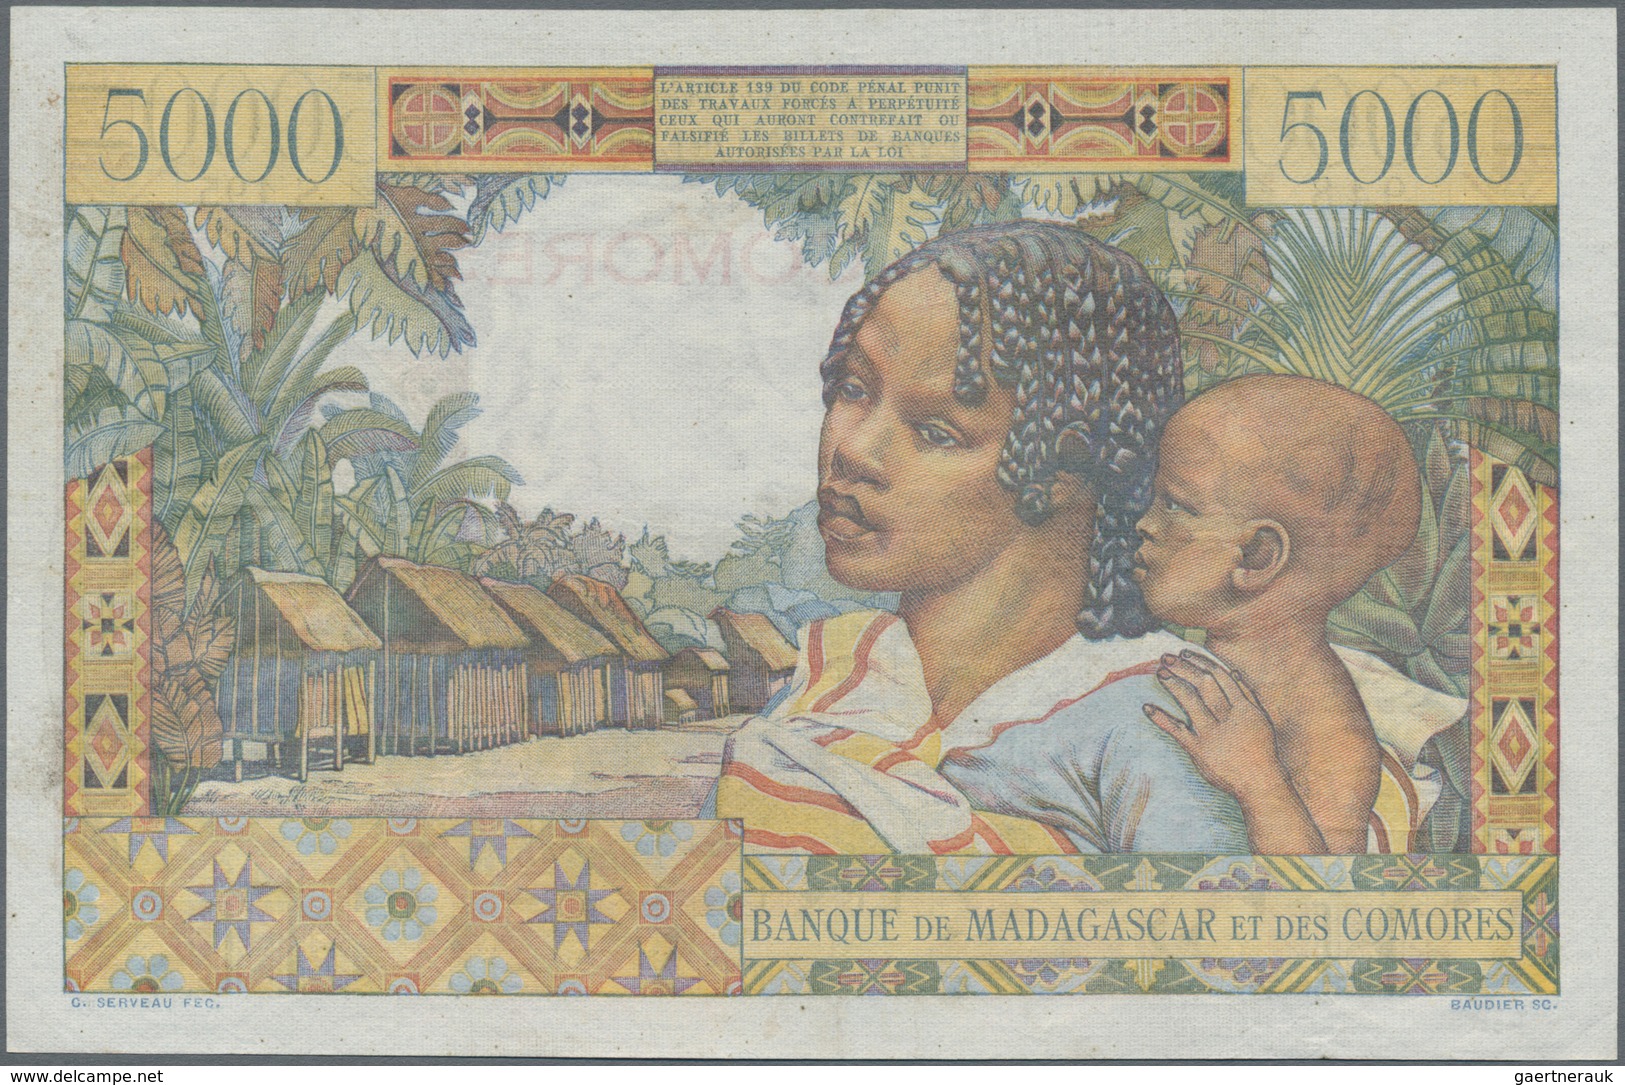 Comoros / Komoren: Banque De Madagascar Et Des Comores 5000 Francs ND(1960-63), P.6c, Very Popular A - Comoros